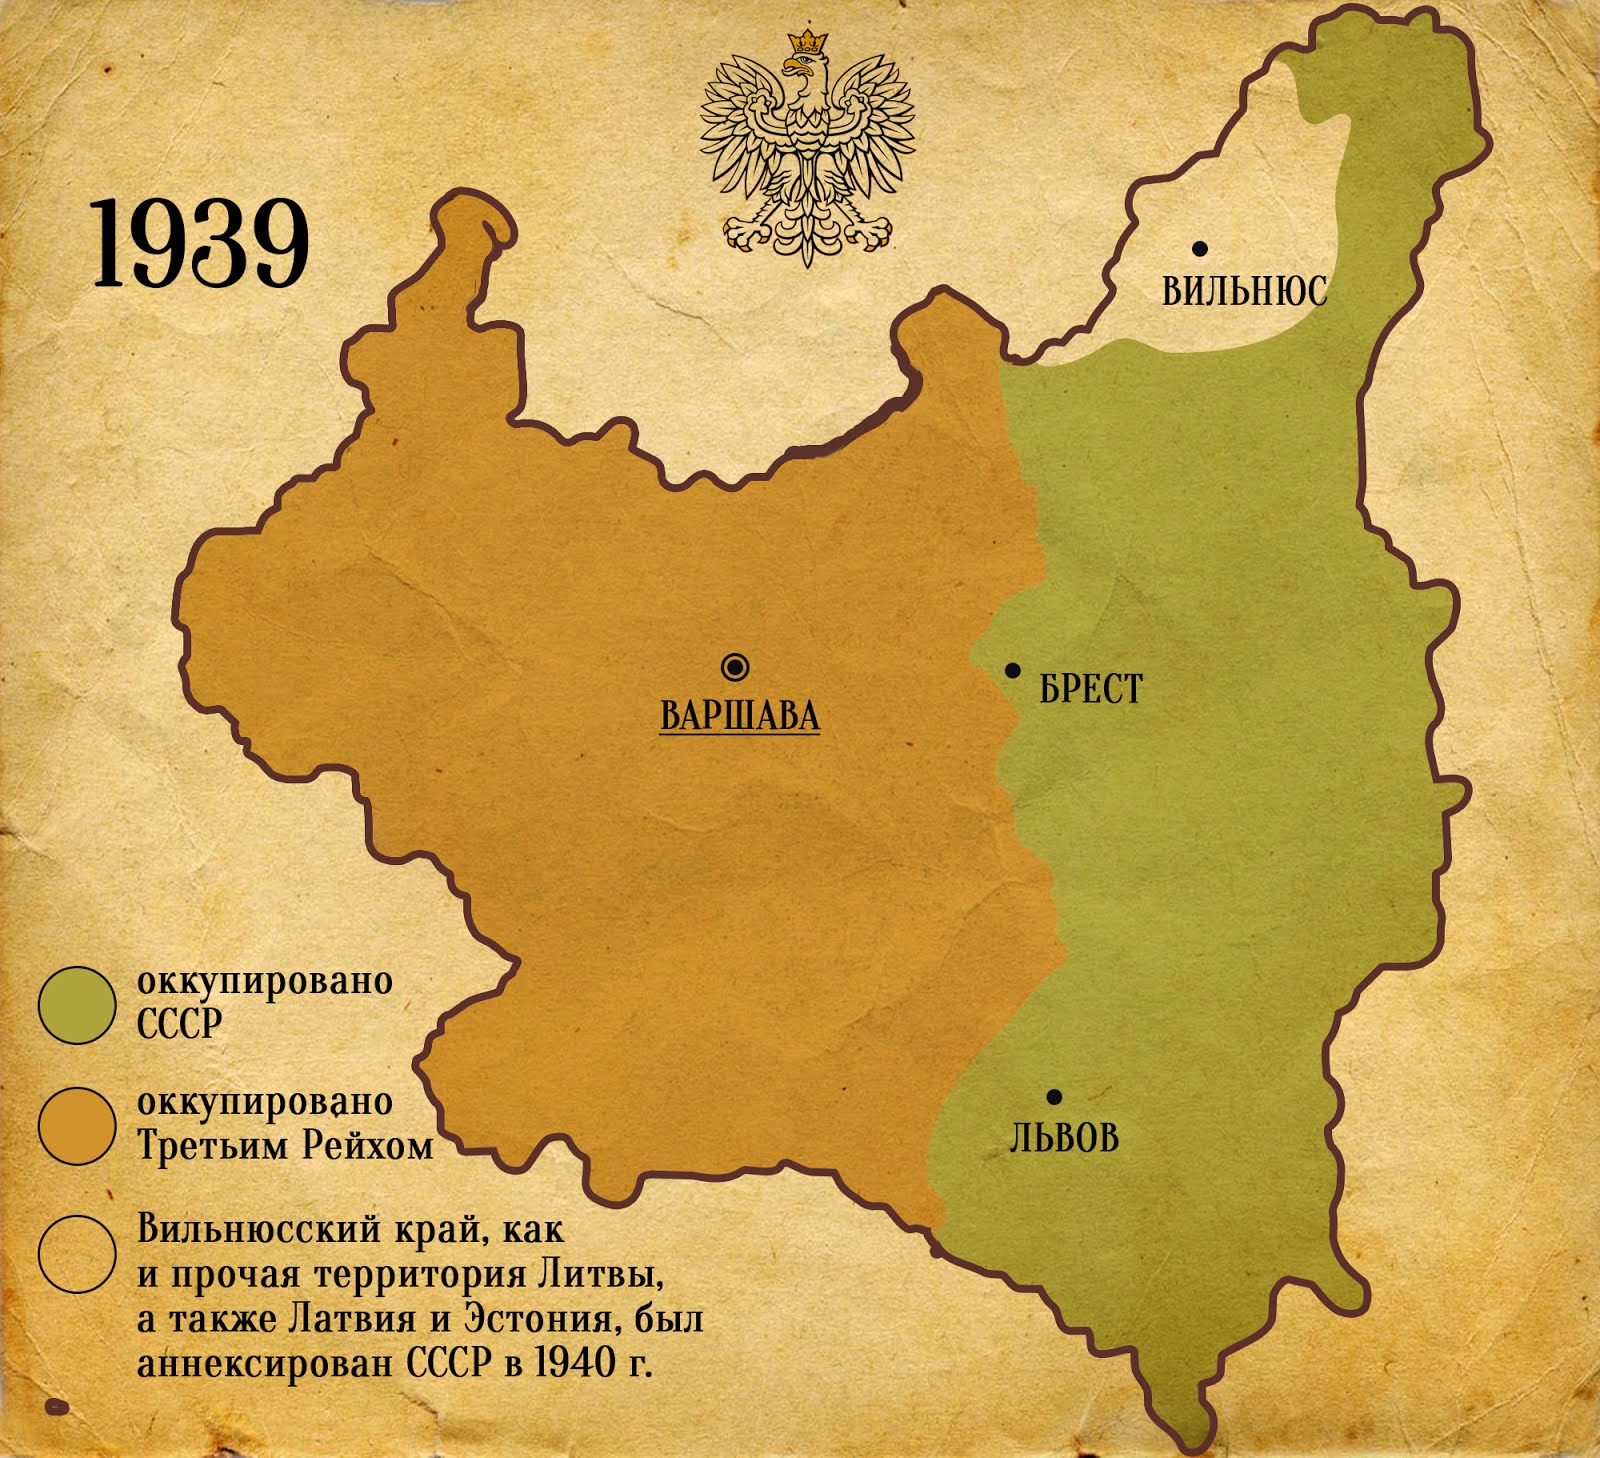 Карта польши 1939. Территория Польши 1939. Раздел Польши 1939 года карта. Территория Польши до 1939 года. Карта раздела Польши в 1939 году.